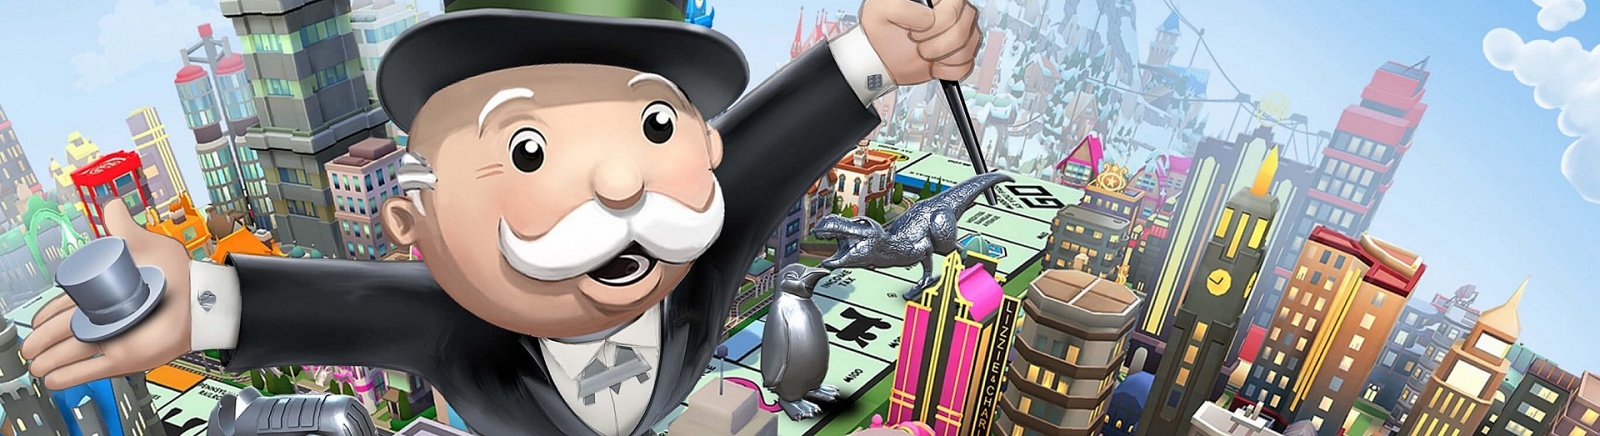 Monopoly (2019) - что это за игра, трейлер, системные требования, отзывы и оценки, цены и скидки, гайды и прохождение, похожие игры 